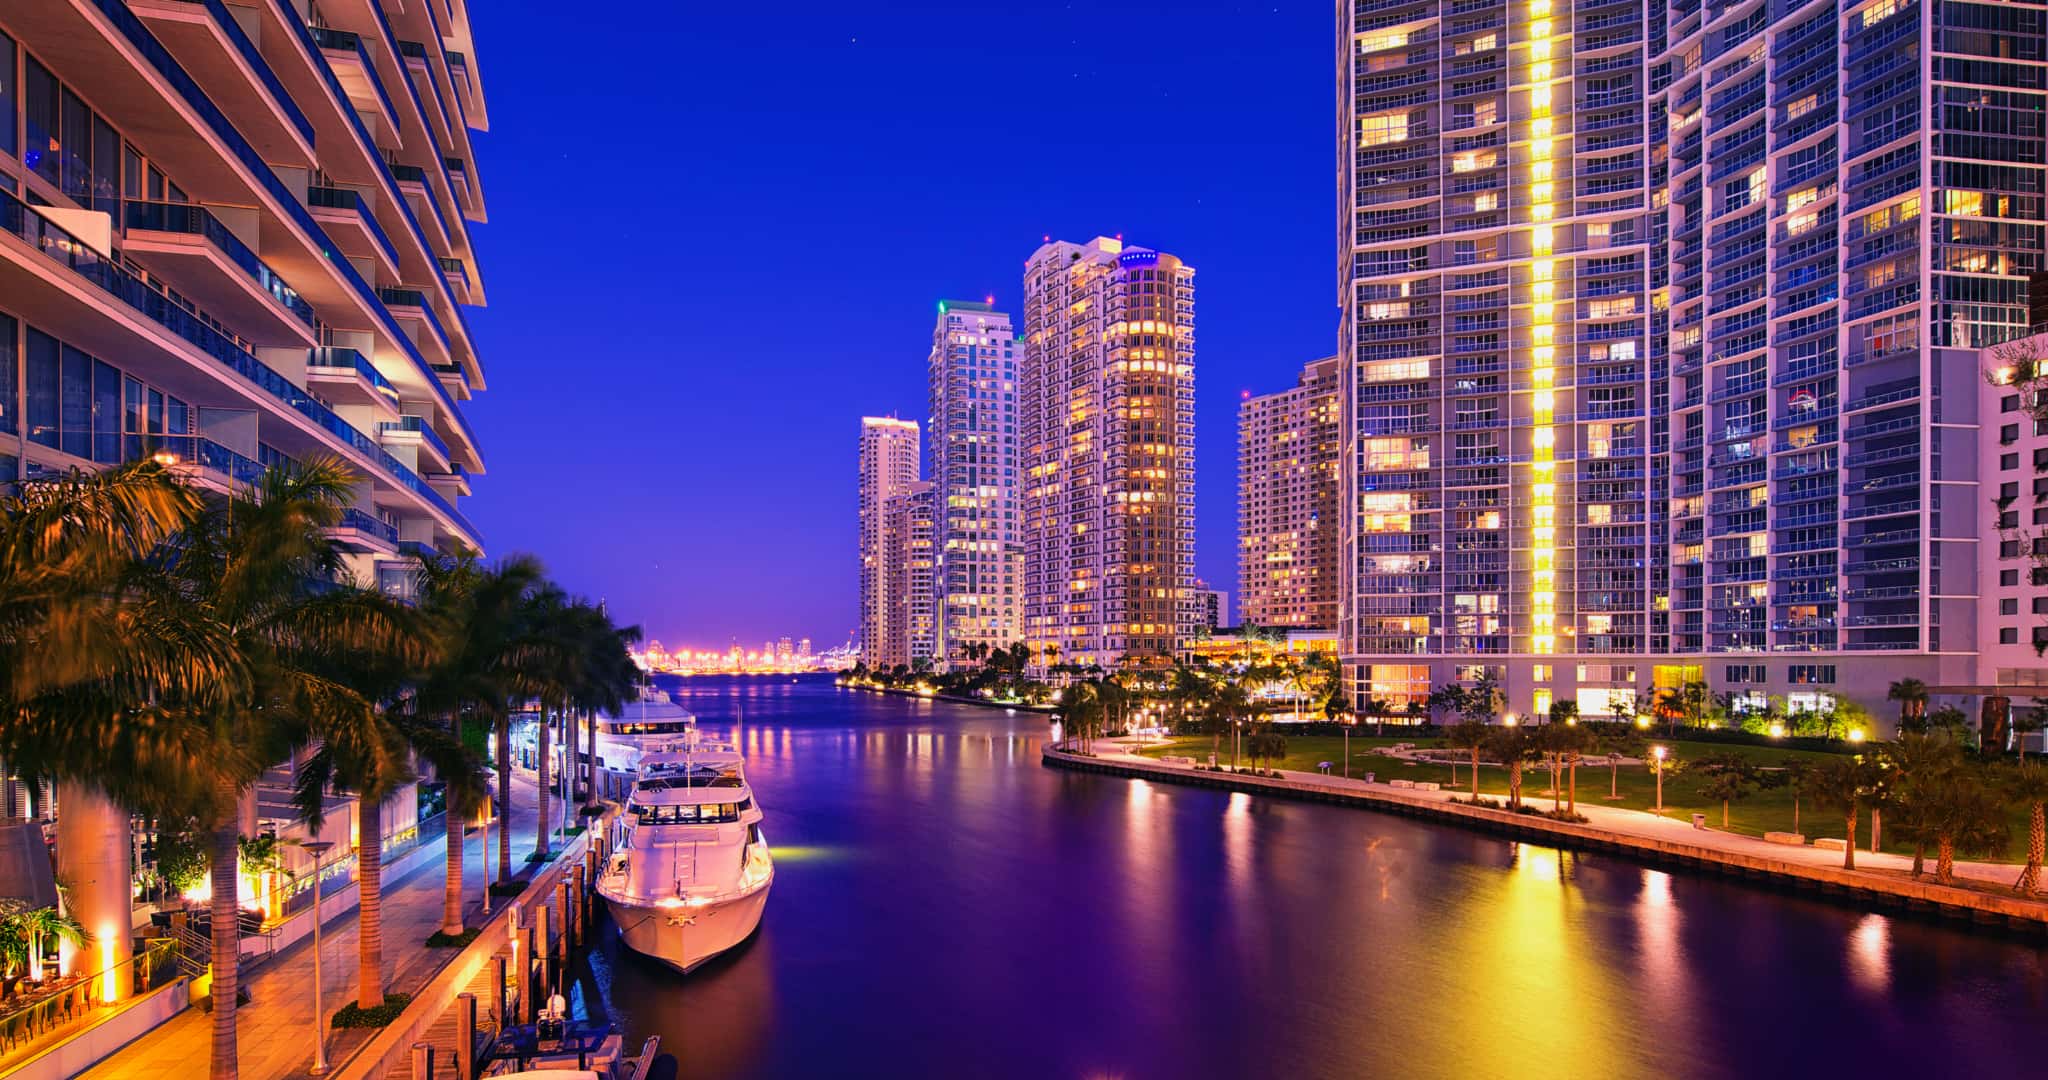 Rascacielos, agua y yates son lo que definen a este céntrico barrio de la ciudad de Miami (Tarrabella Realty)